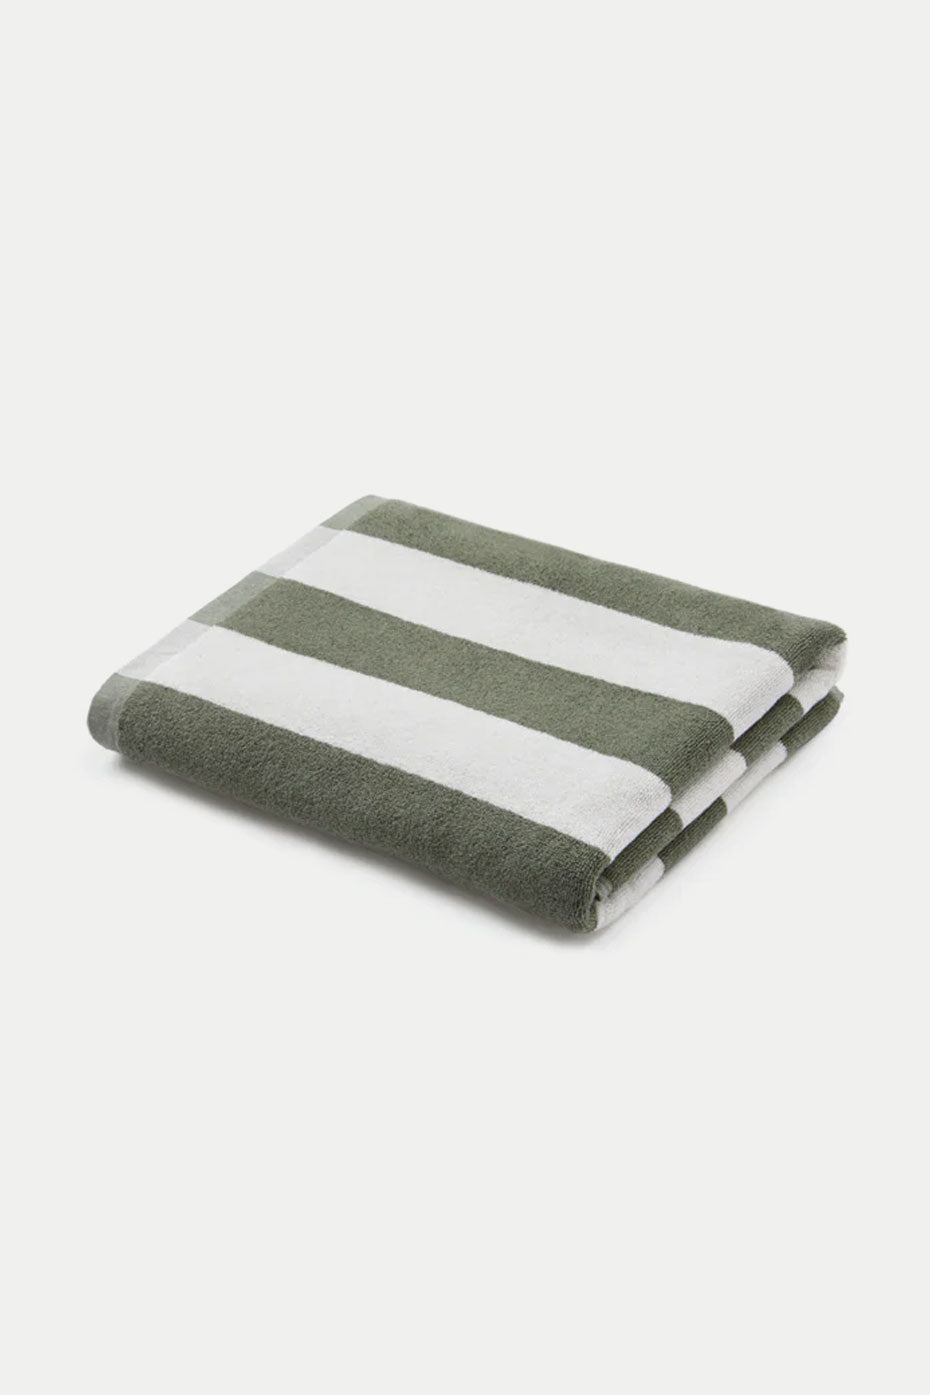 Matcha Stripes Towel